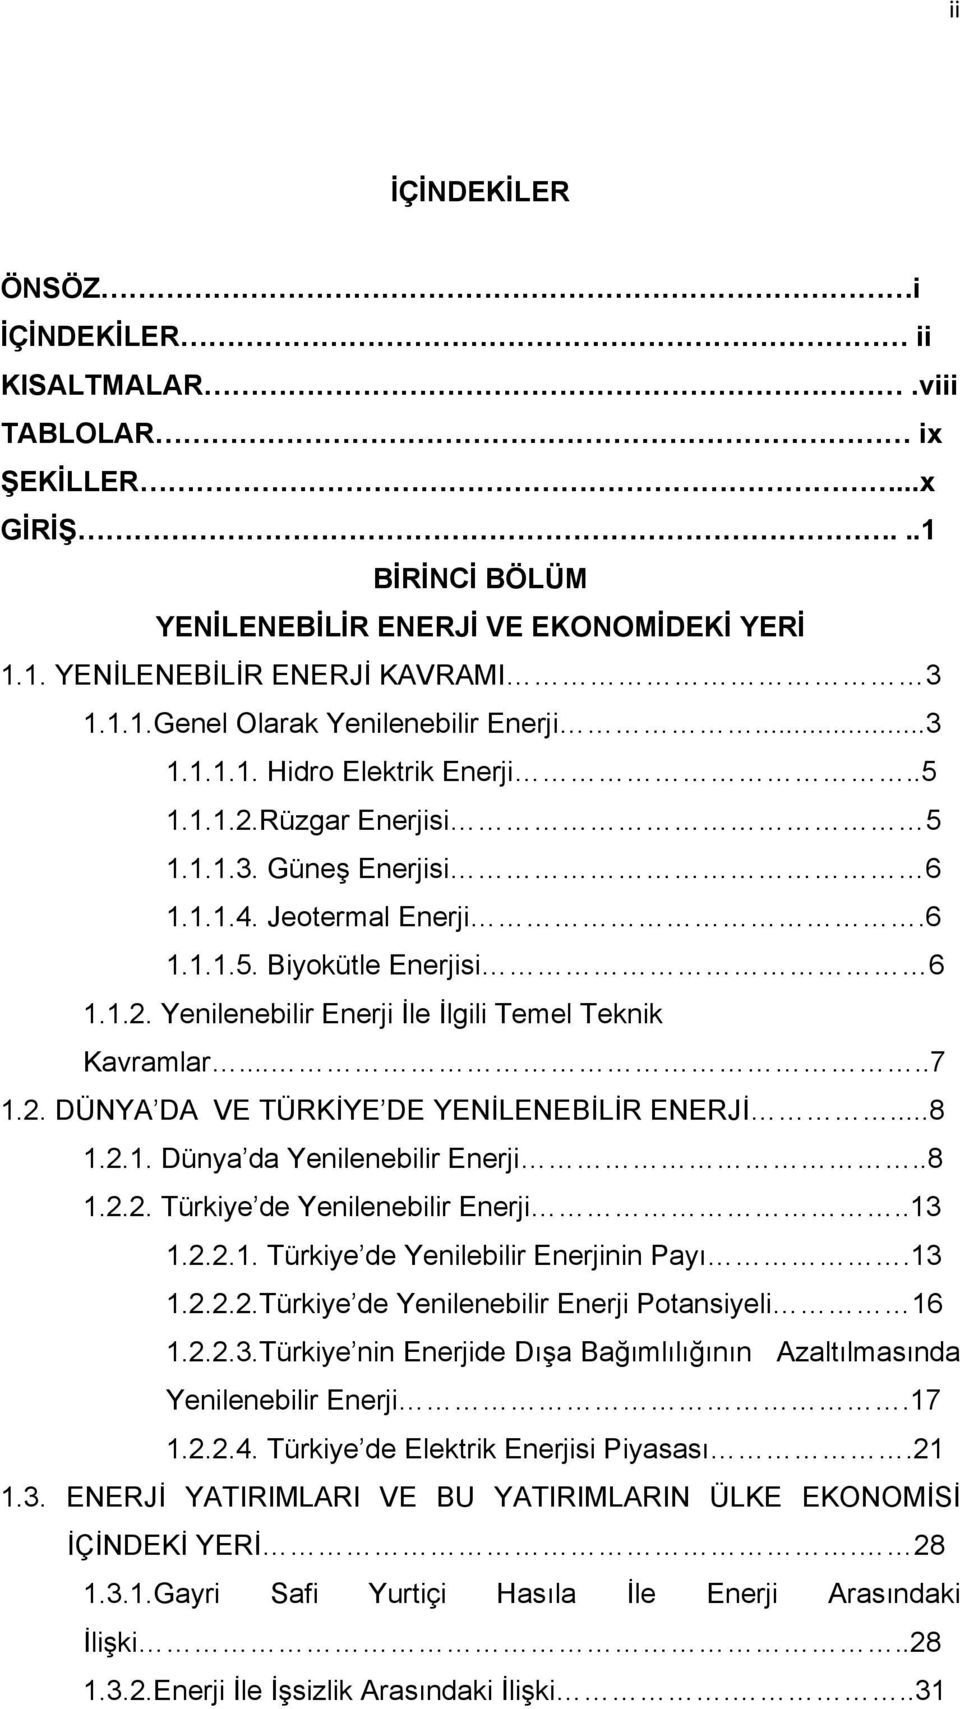 ....7 1.2. DÜNYA DA VE TÜRKİYE DE YENİLENEBİLİR ENERJİ...8 1.2.1. Dünya da Yenilenebilir Enerji..8 1.2.2. Türkiye de Yenilenebilir Enerji..13 1.2.2.1. Türkiye de Yenilebilir Enerjinin Payı.13 1.2.2.2.Türkiye de Yenilenebilir Enerji Potansiyeli 16 1.